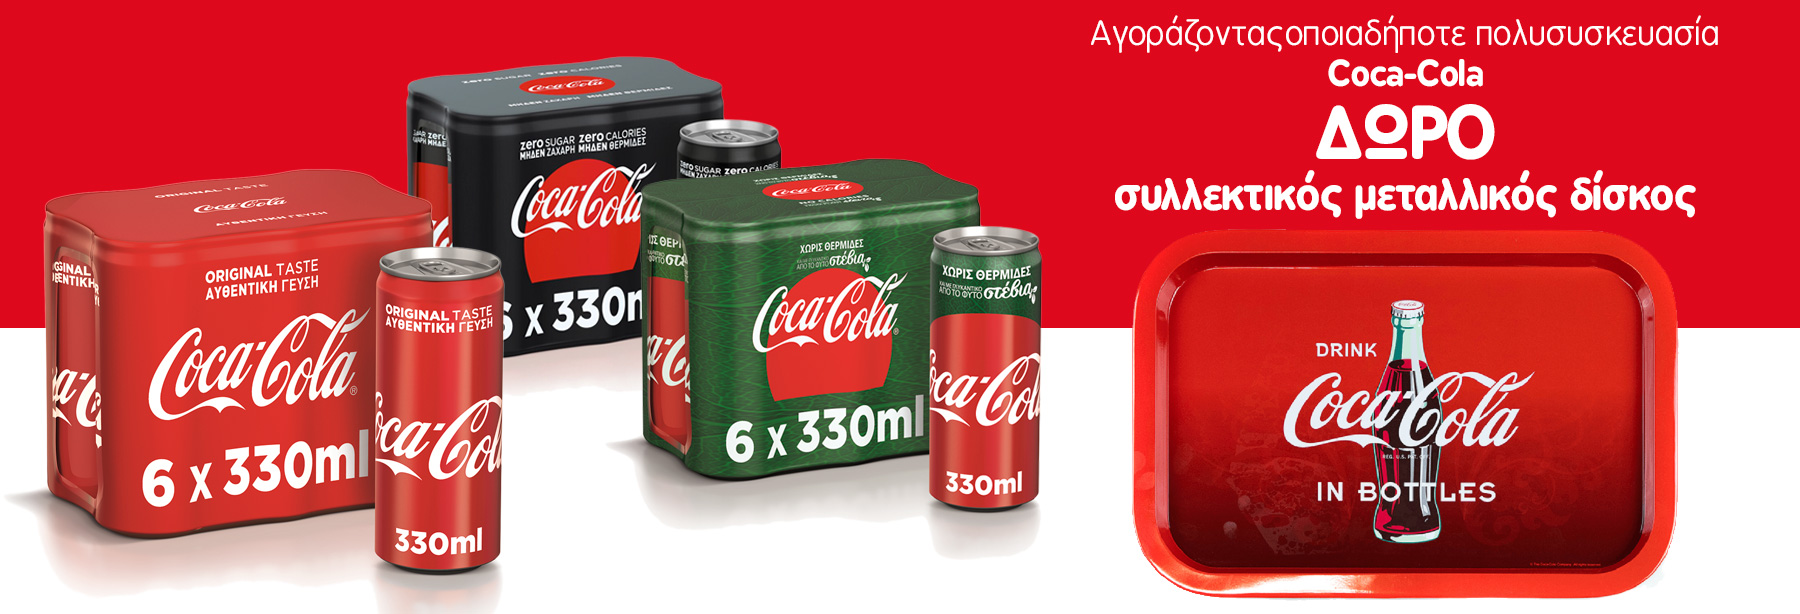 Μοναδική προσφορά από την Coca Cola